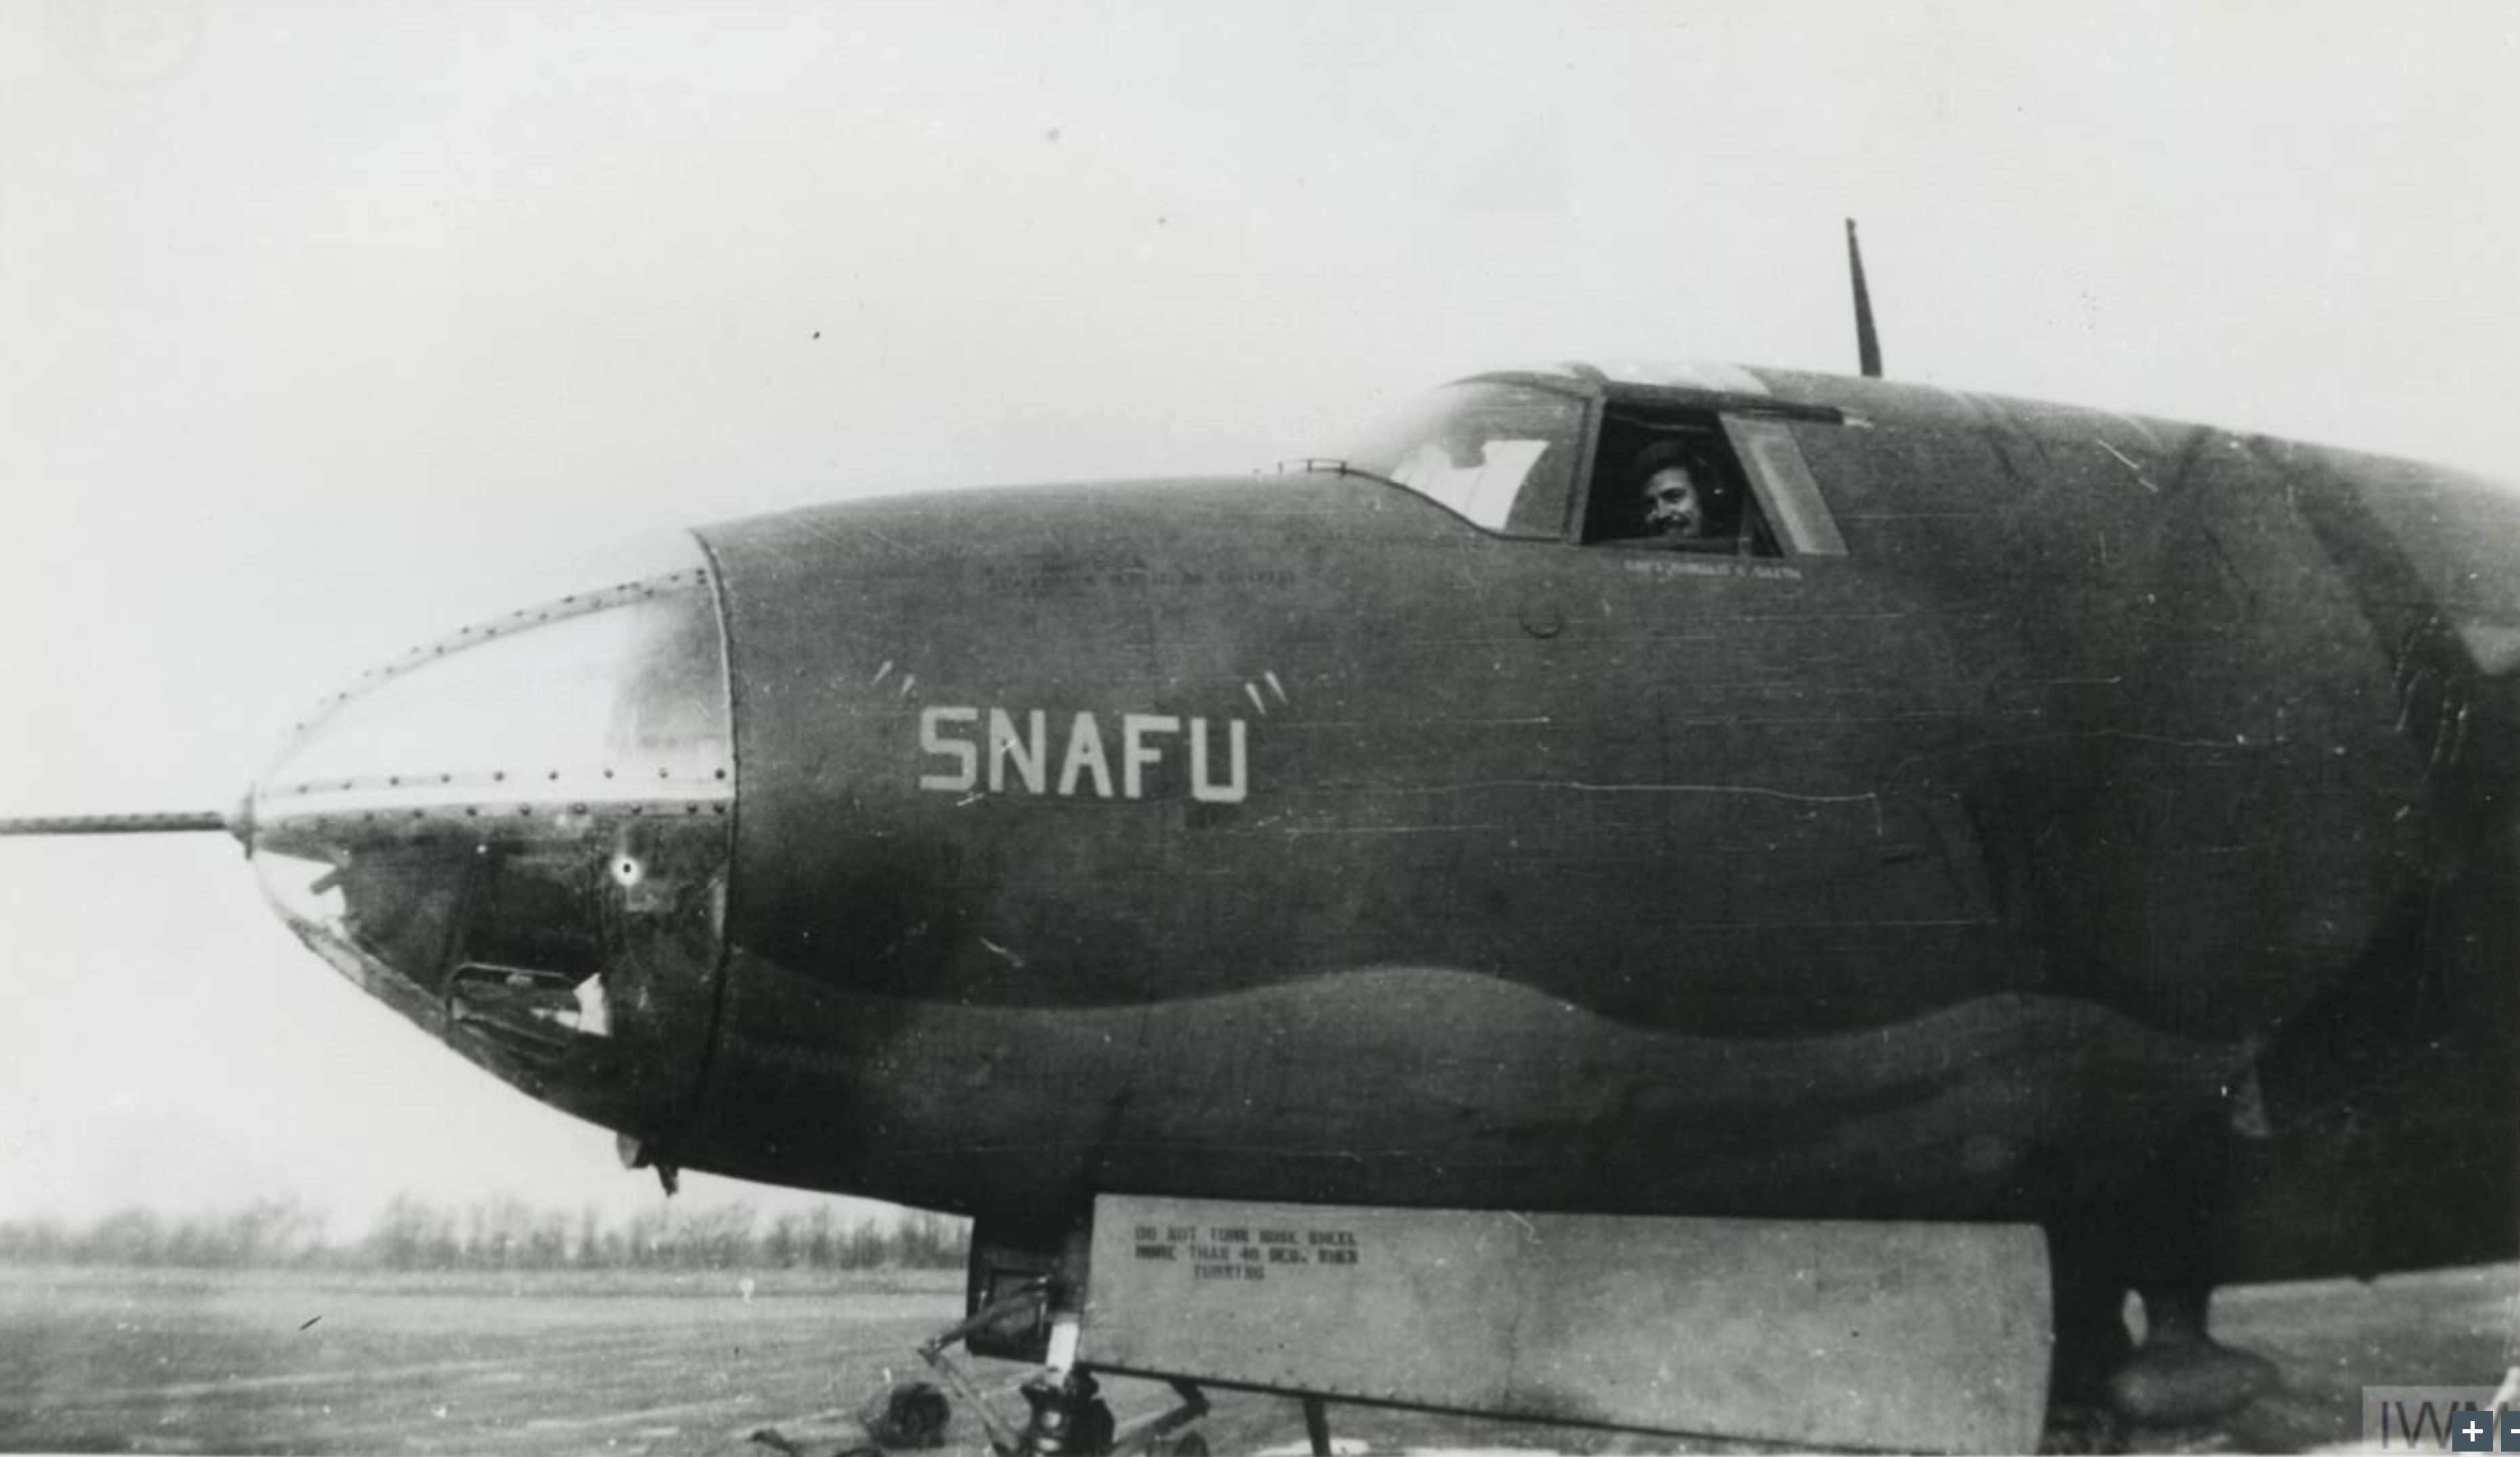 41 17754 B 26B Marauder 12AF 319BG Susfu with Capt DG Smith England Nov 1942 FRE13354